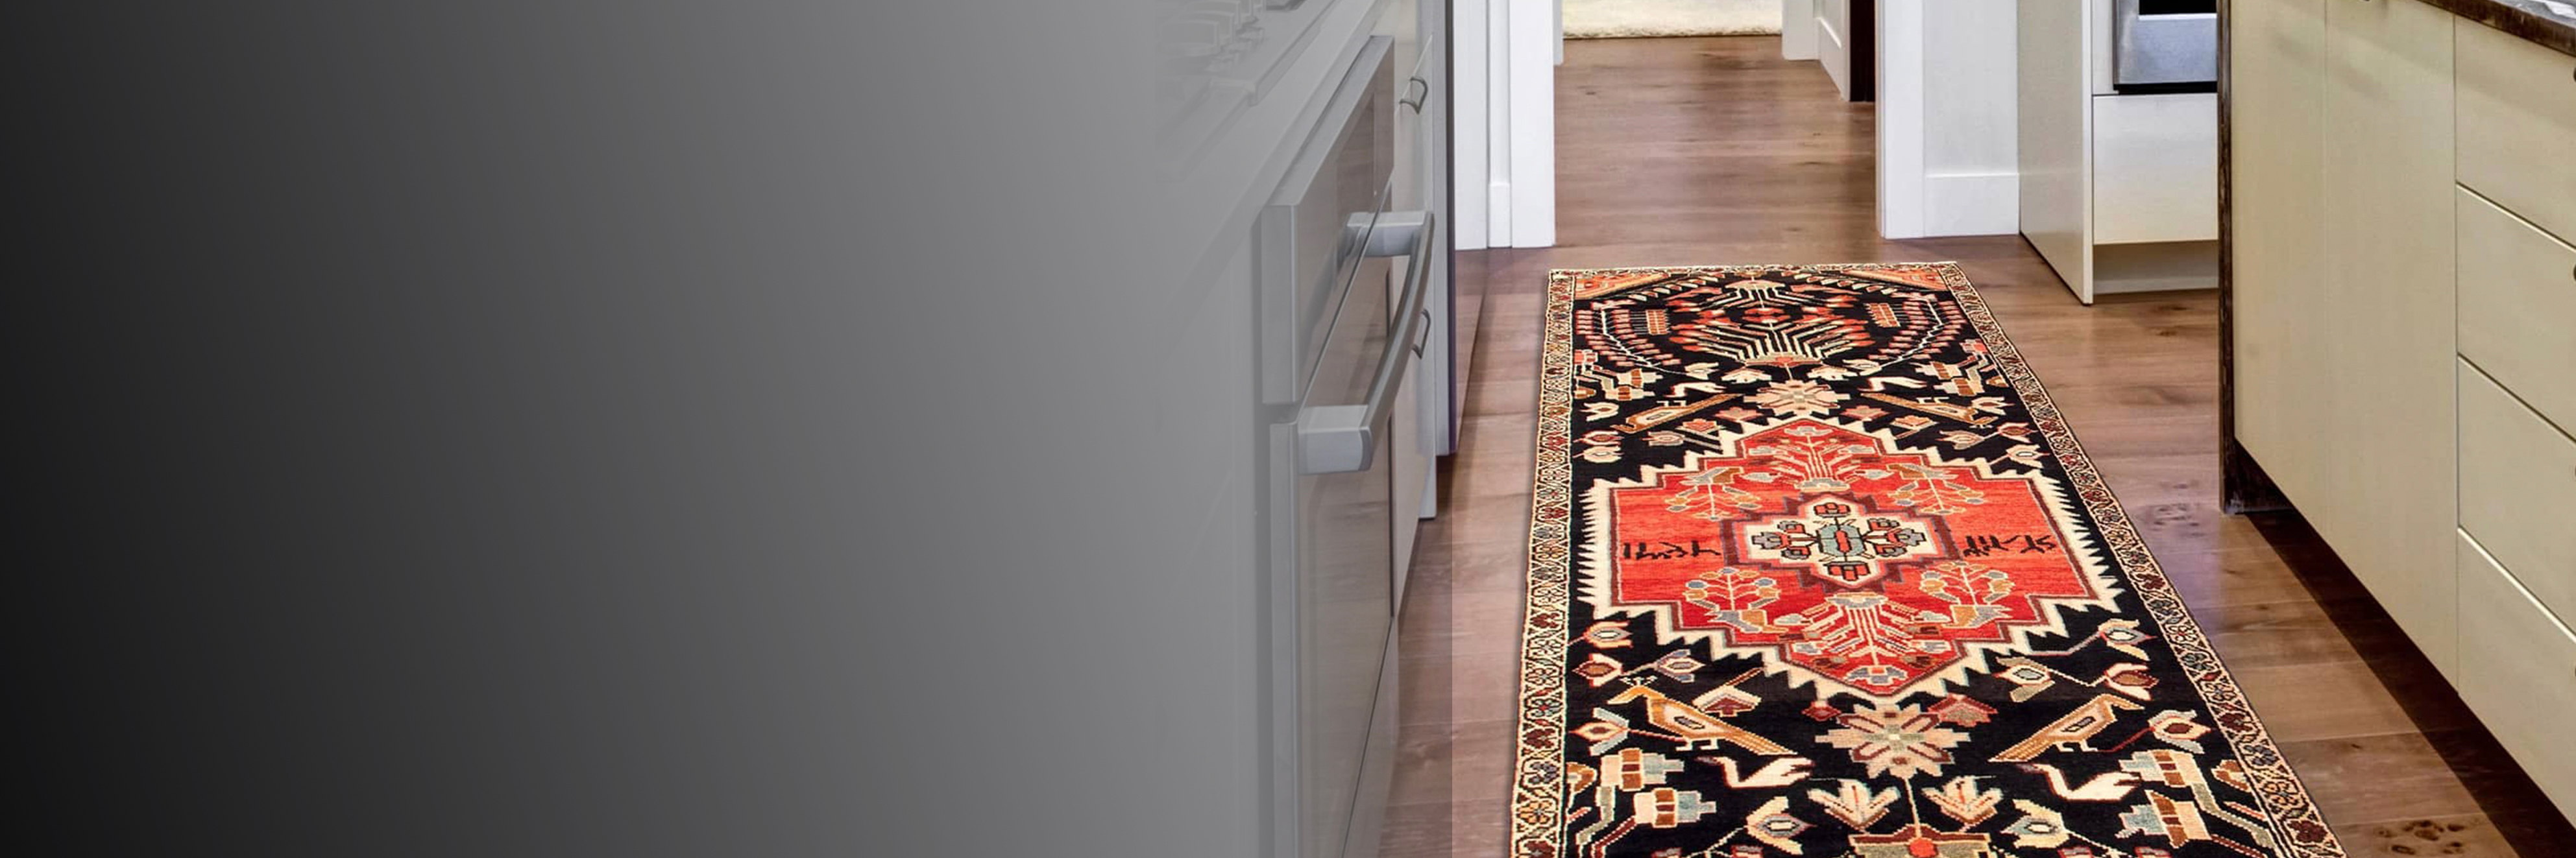 Runner rug on narrow kitchen floor